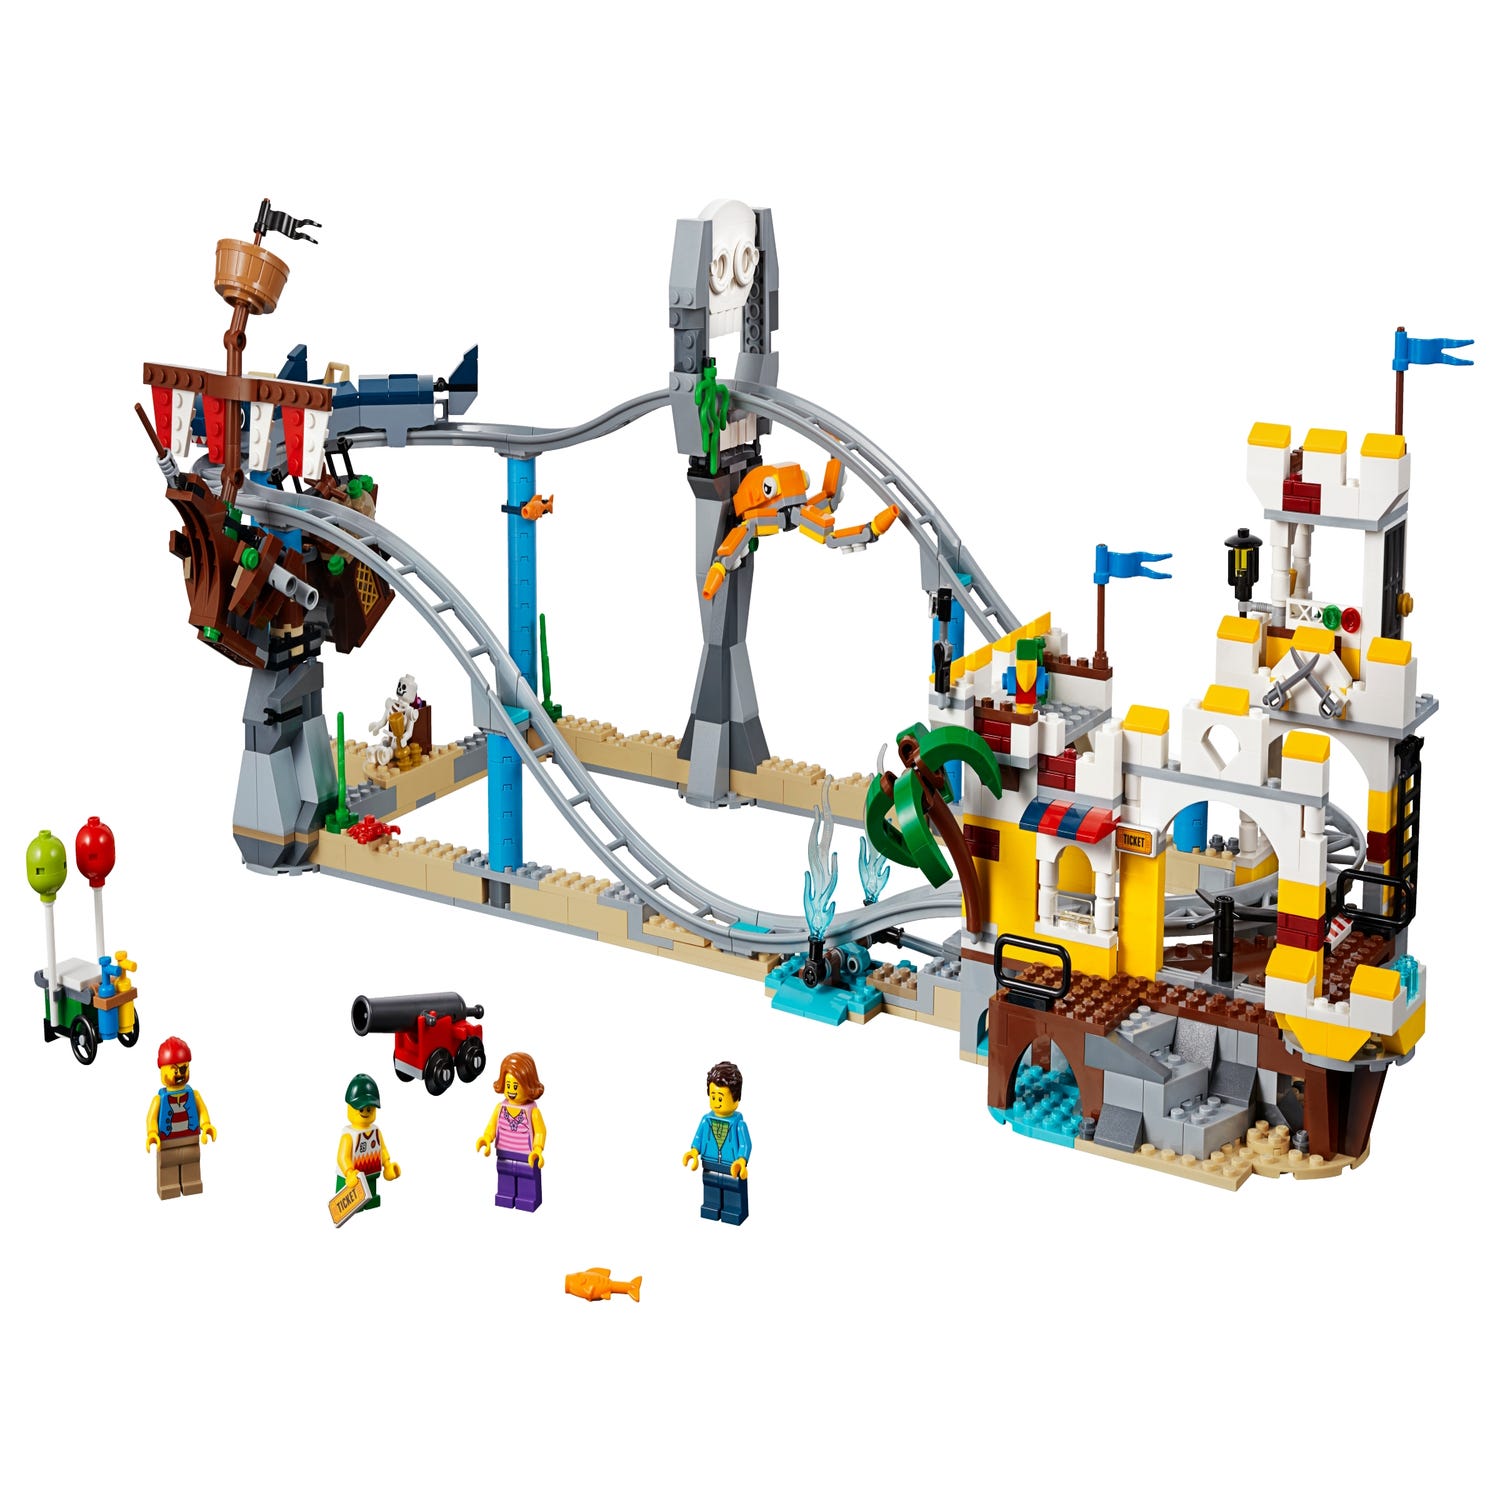 Lego City Roller Coaster | escapeauthority.com